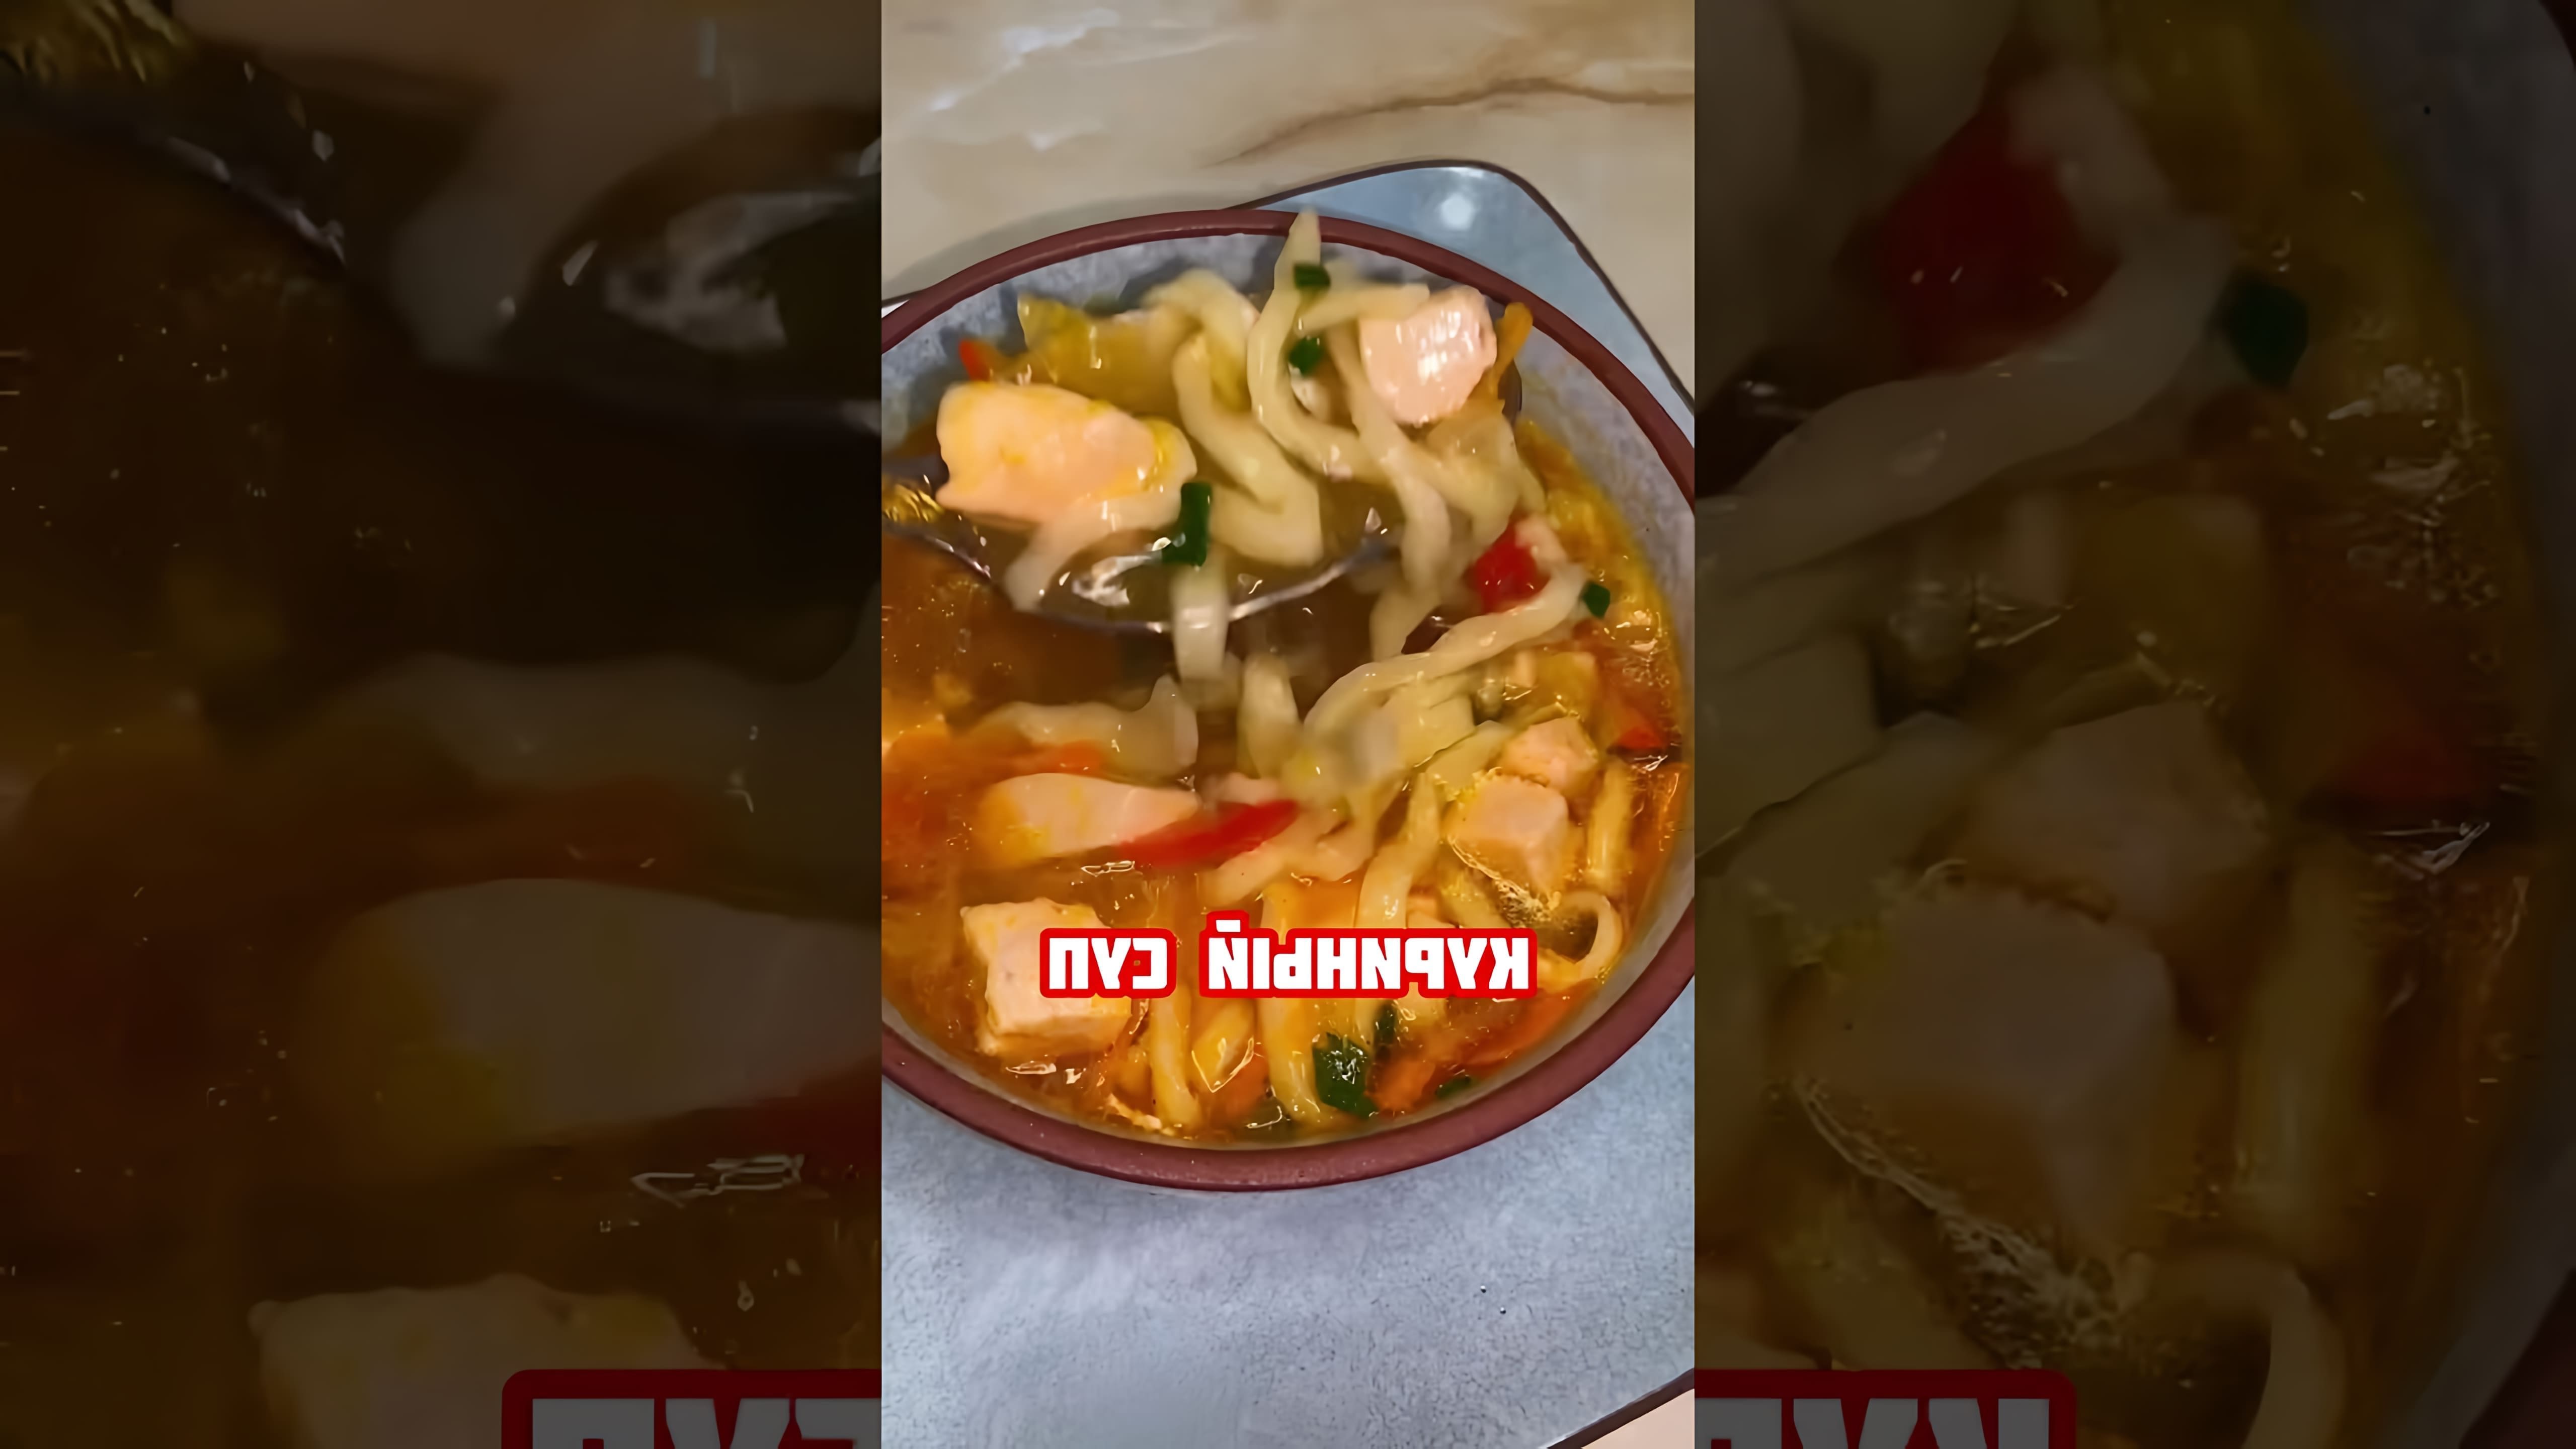 В этом видео демонстрируется процесс приготовления вкусного куриного супа из домашней лапши